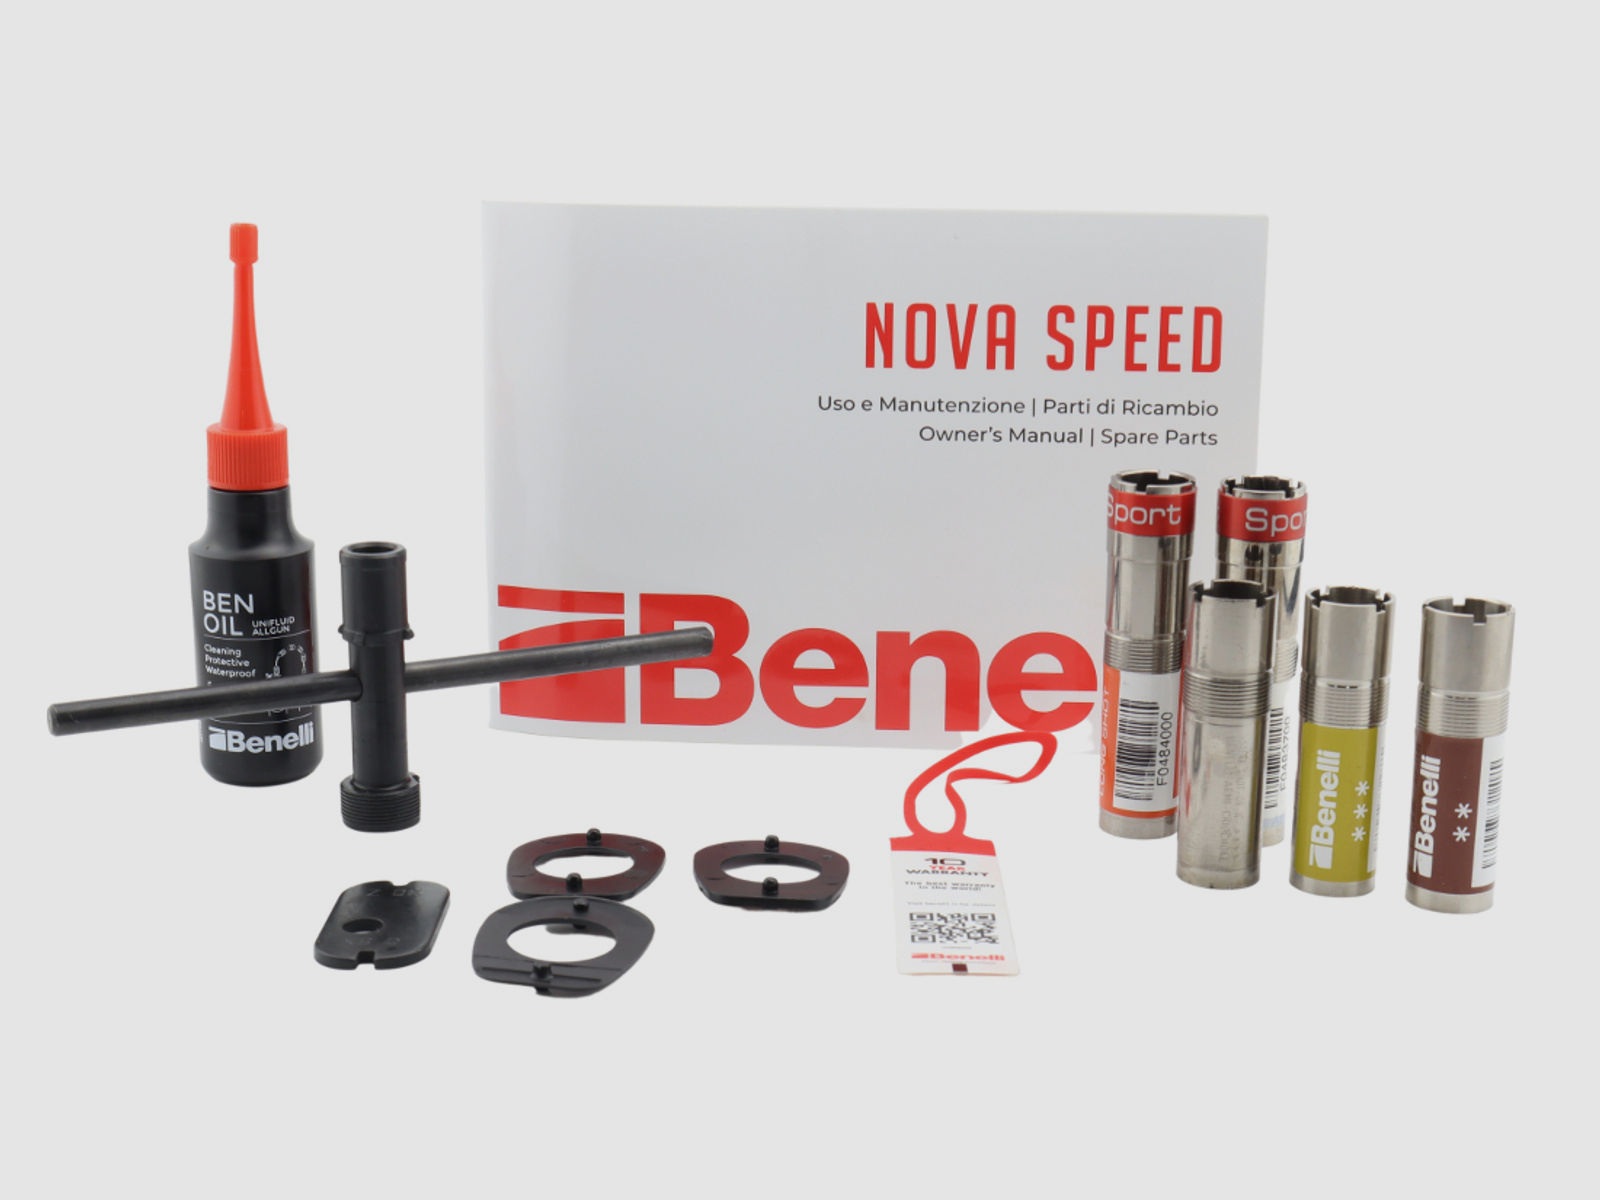 Neu, auf Lager: Benelli Nova Speed Vorderschaft Repetierflinte Rep. Flinte Pumpe Sport / IPSC  Finanzierung möglich!